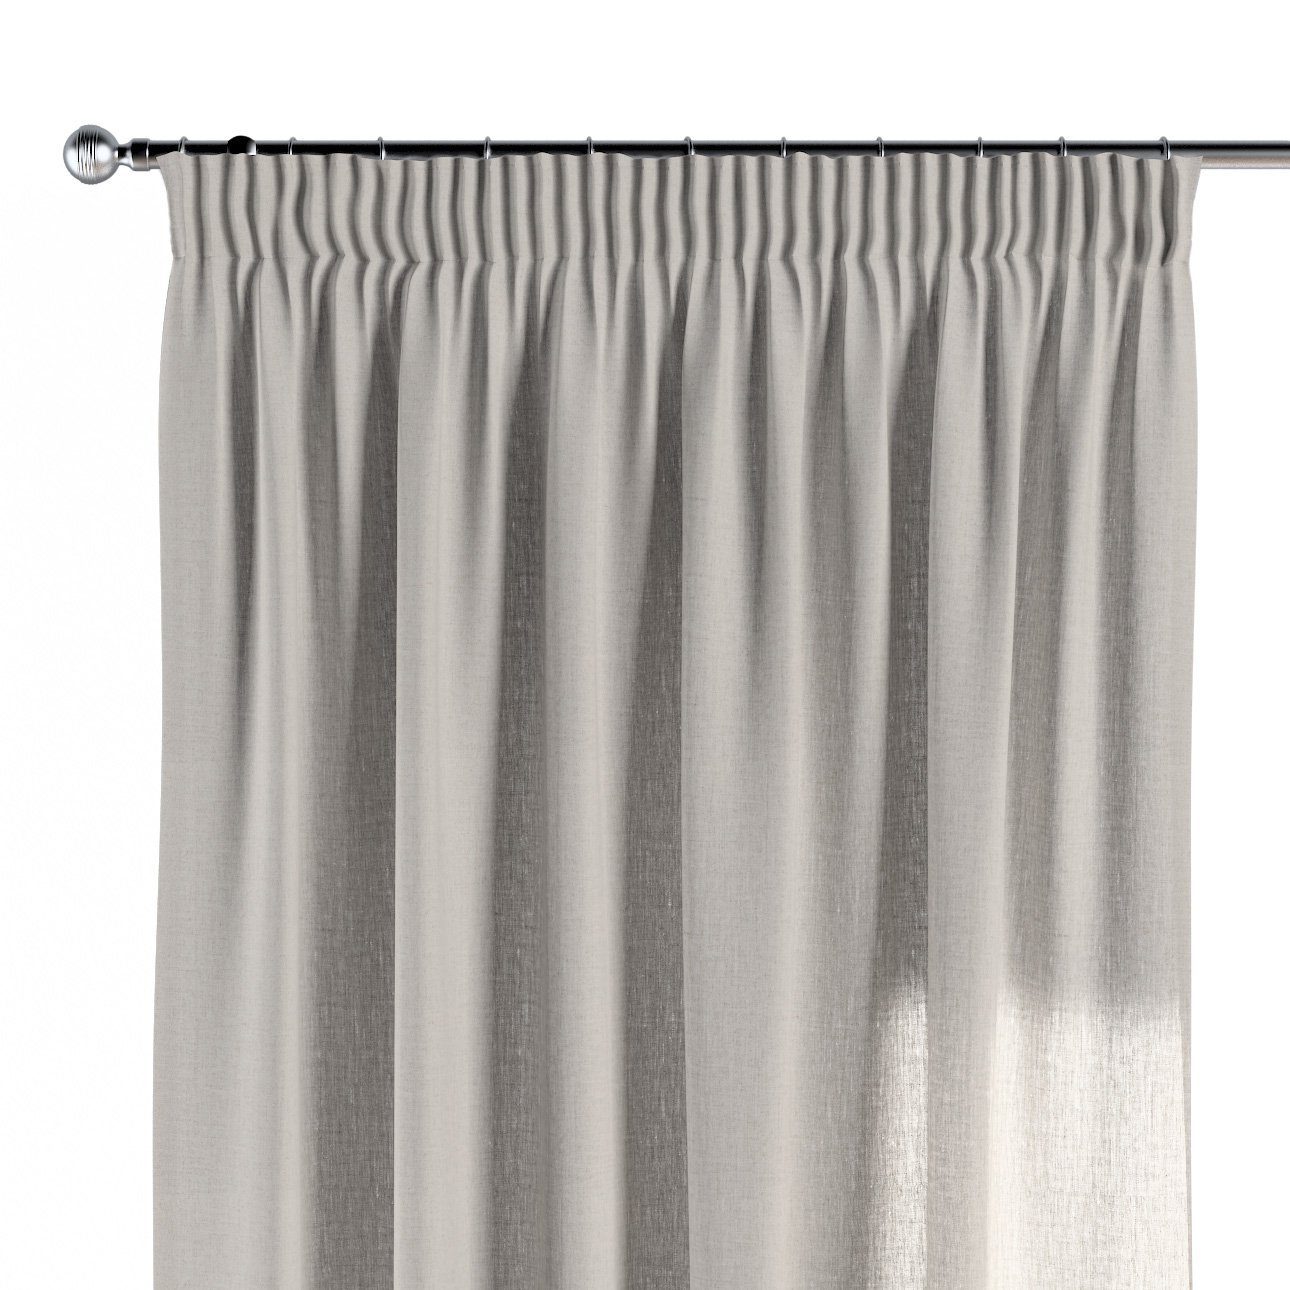 Vorhang Vorhang mit Kräuselband 130x100 cm, Leinen, Dekoria grau-beige